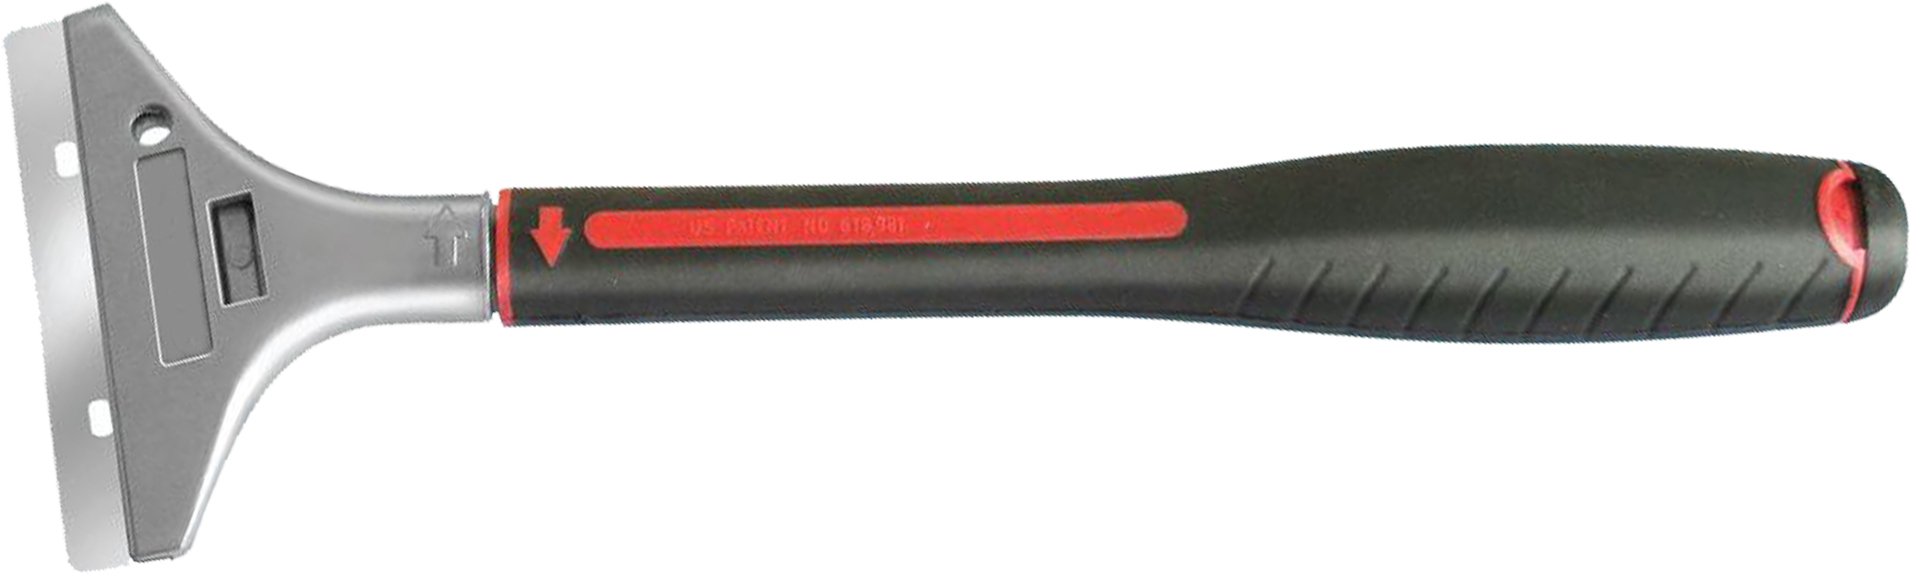 stripper blade handle